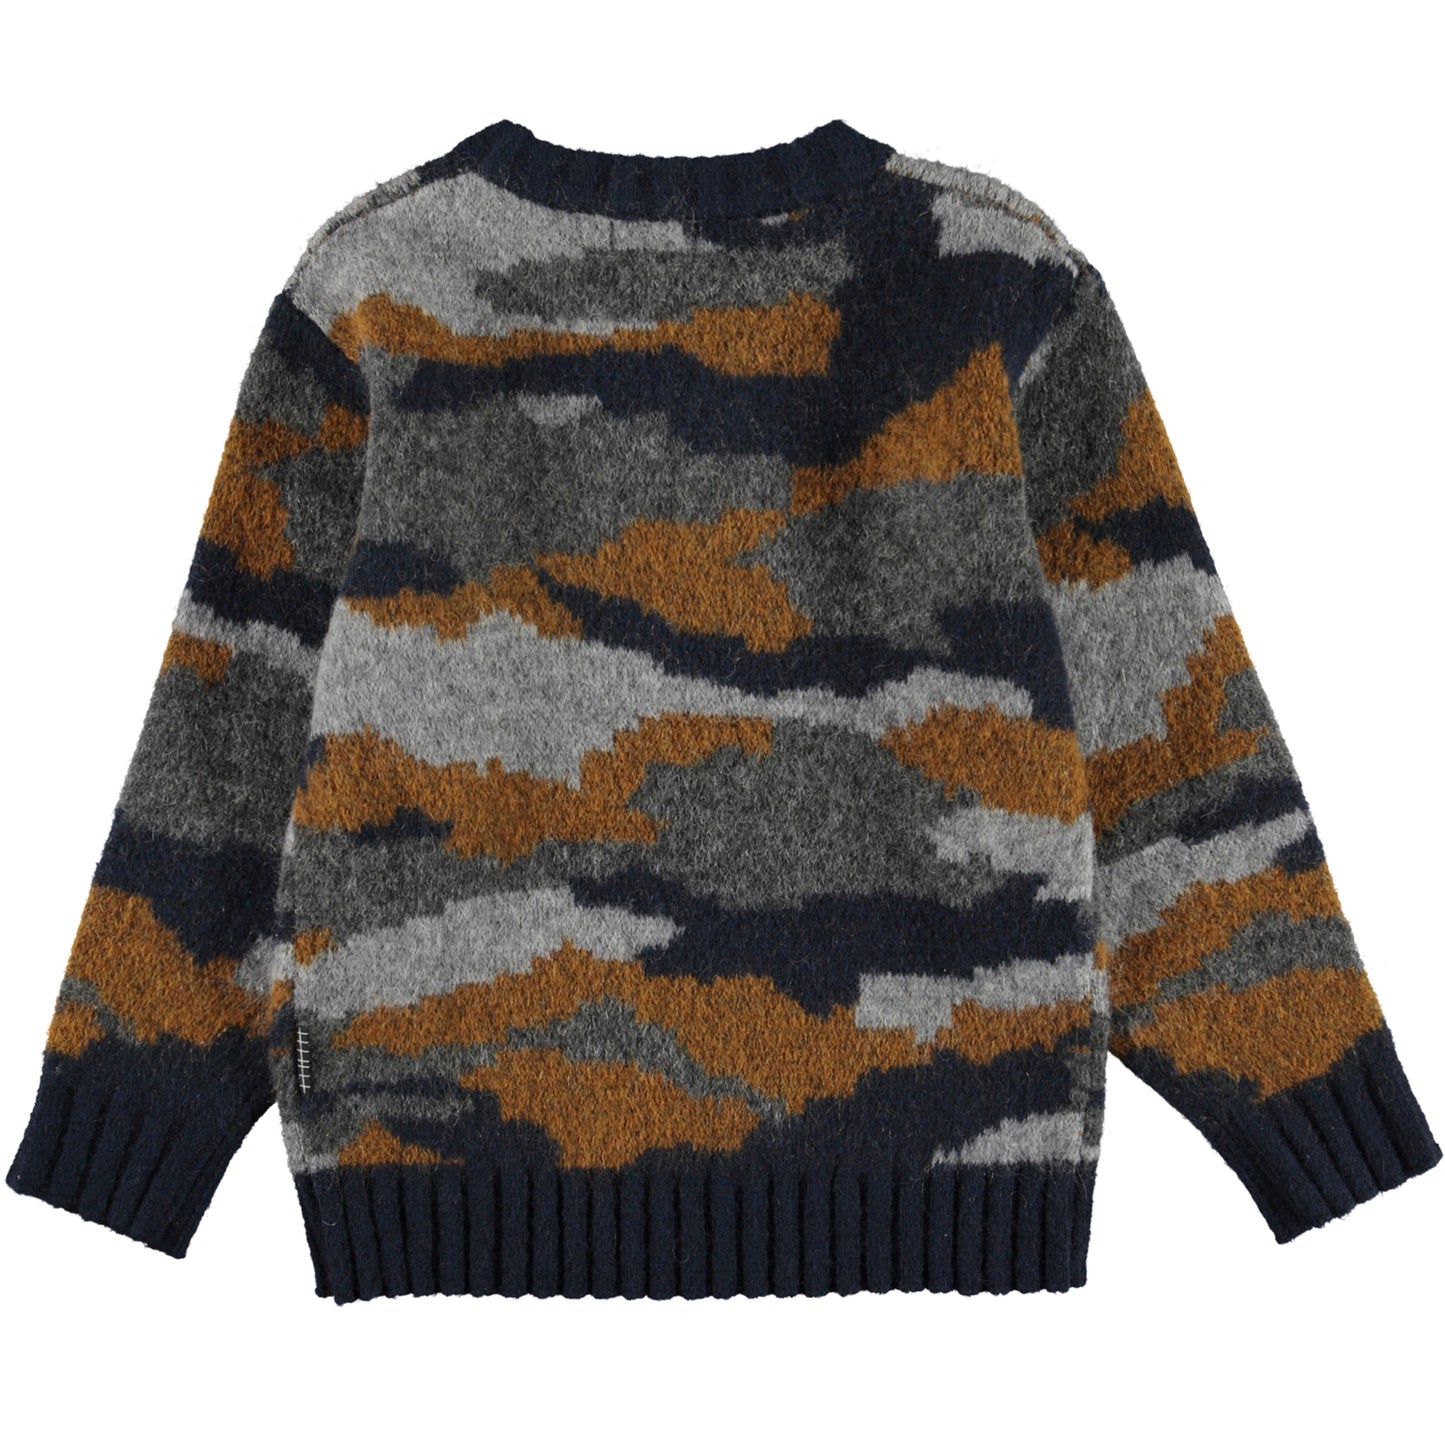 Molo Bello Camo Knit Sweater